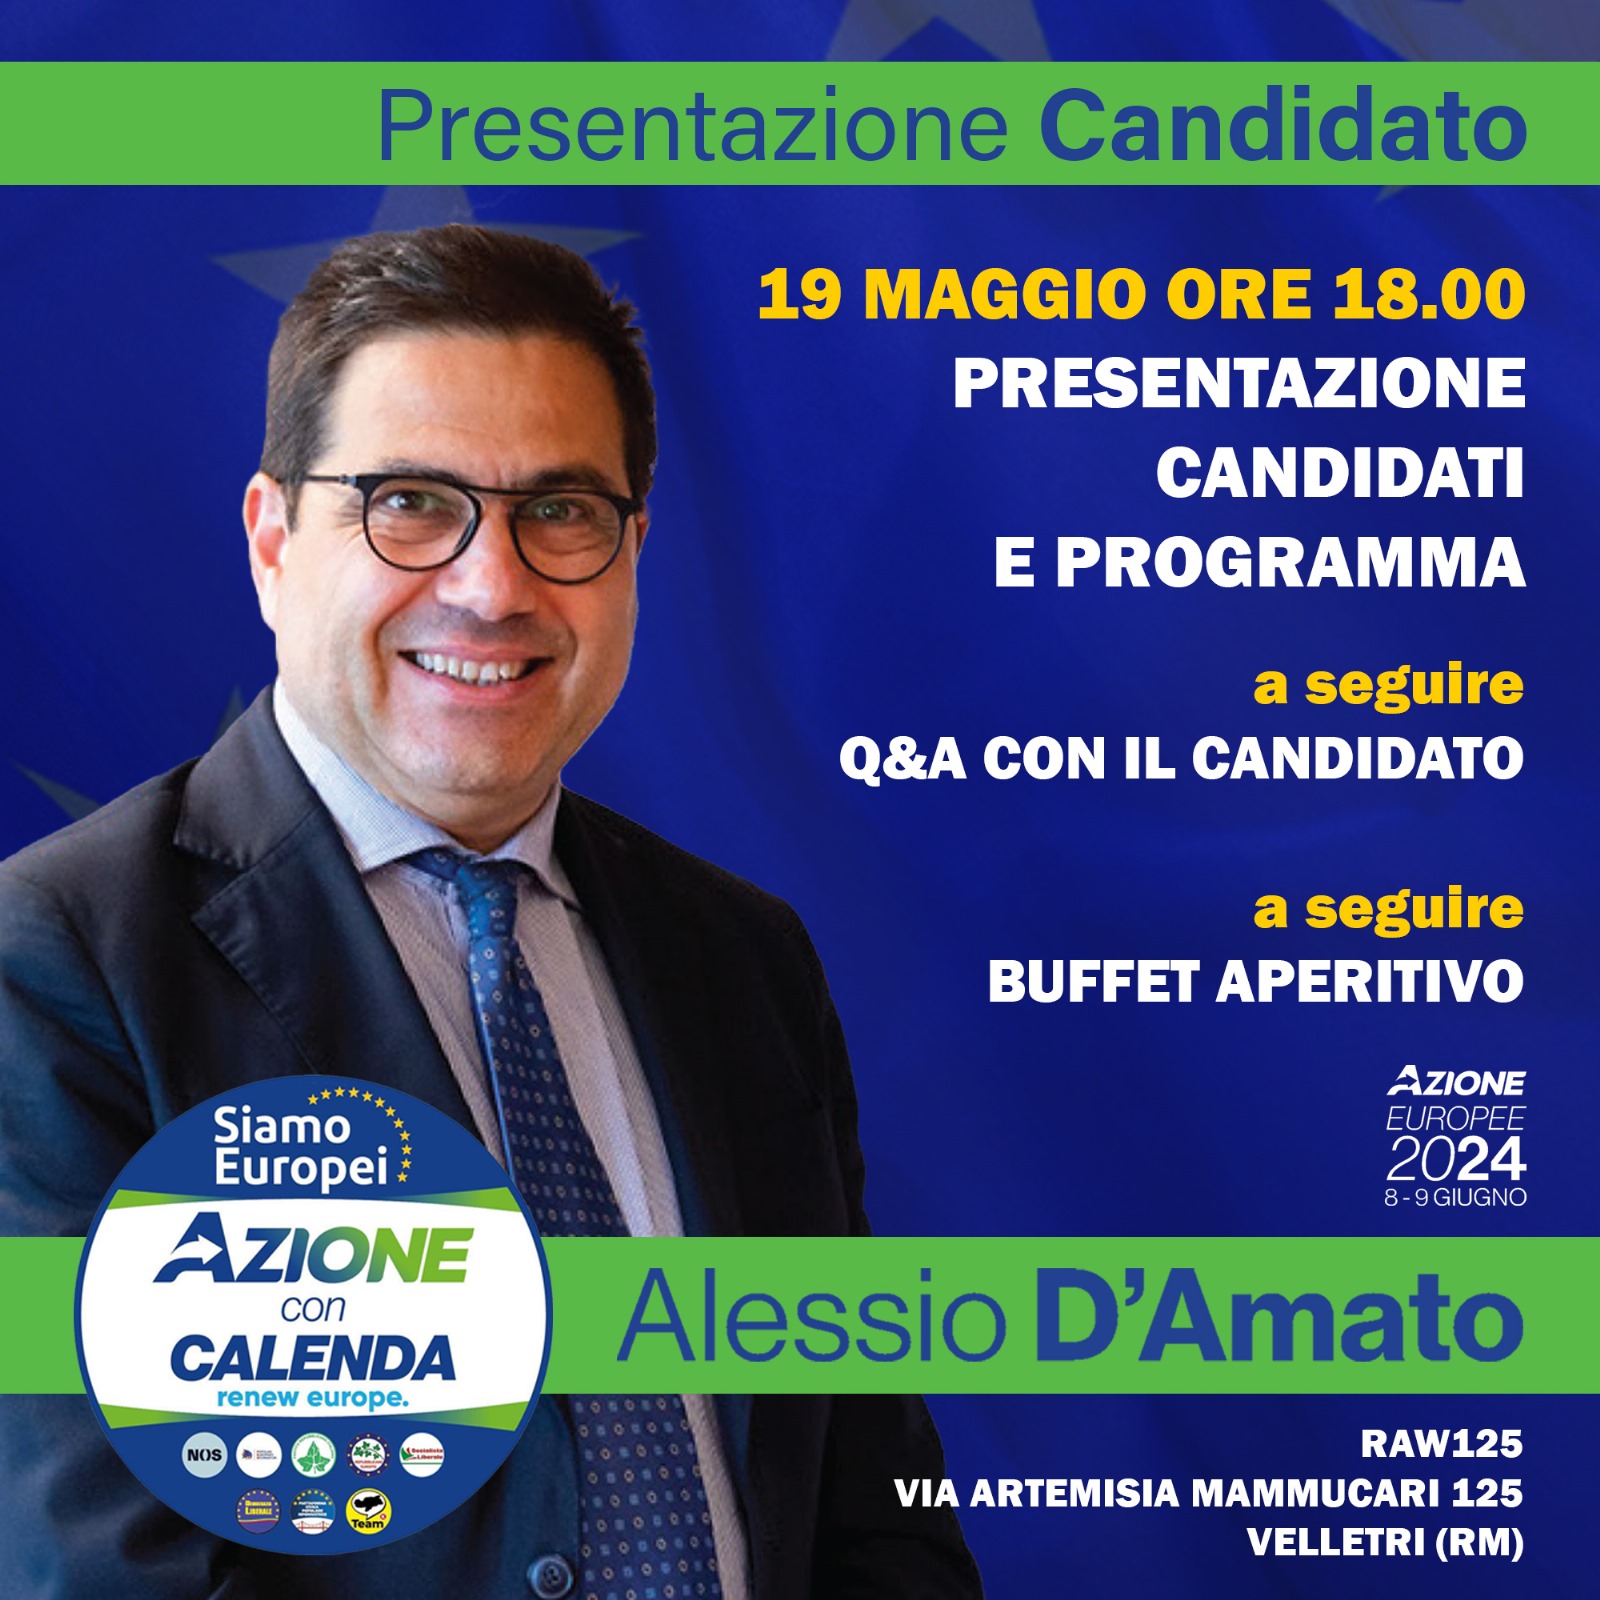 Presentazione candidati - Alessio D'Amato